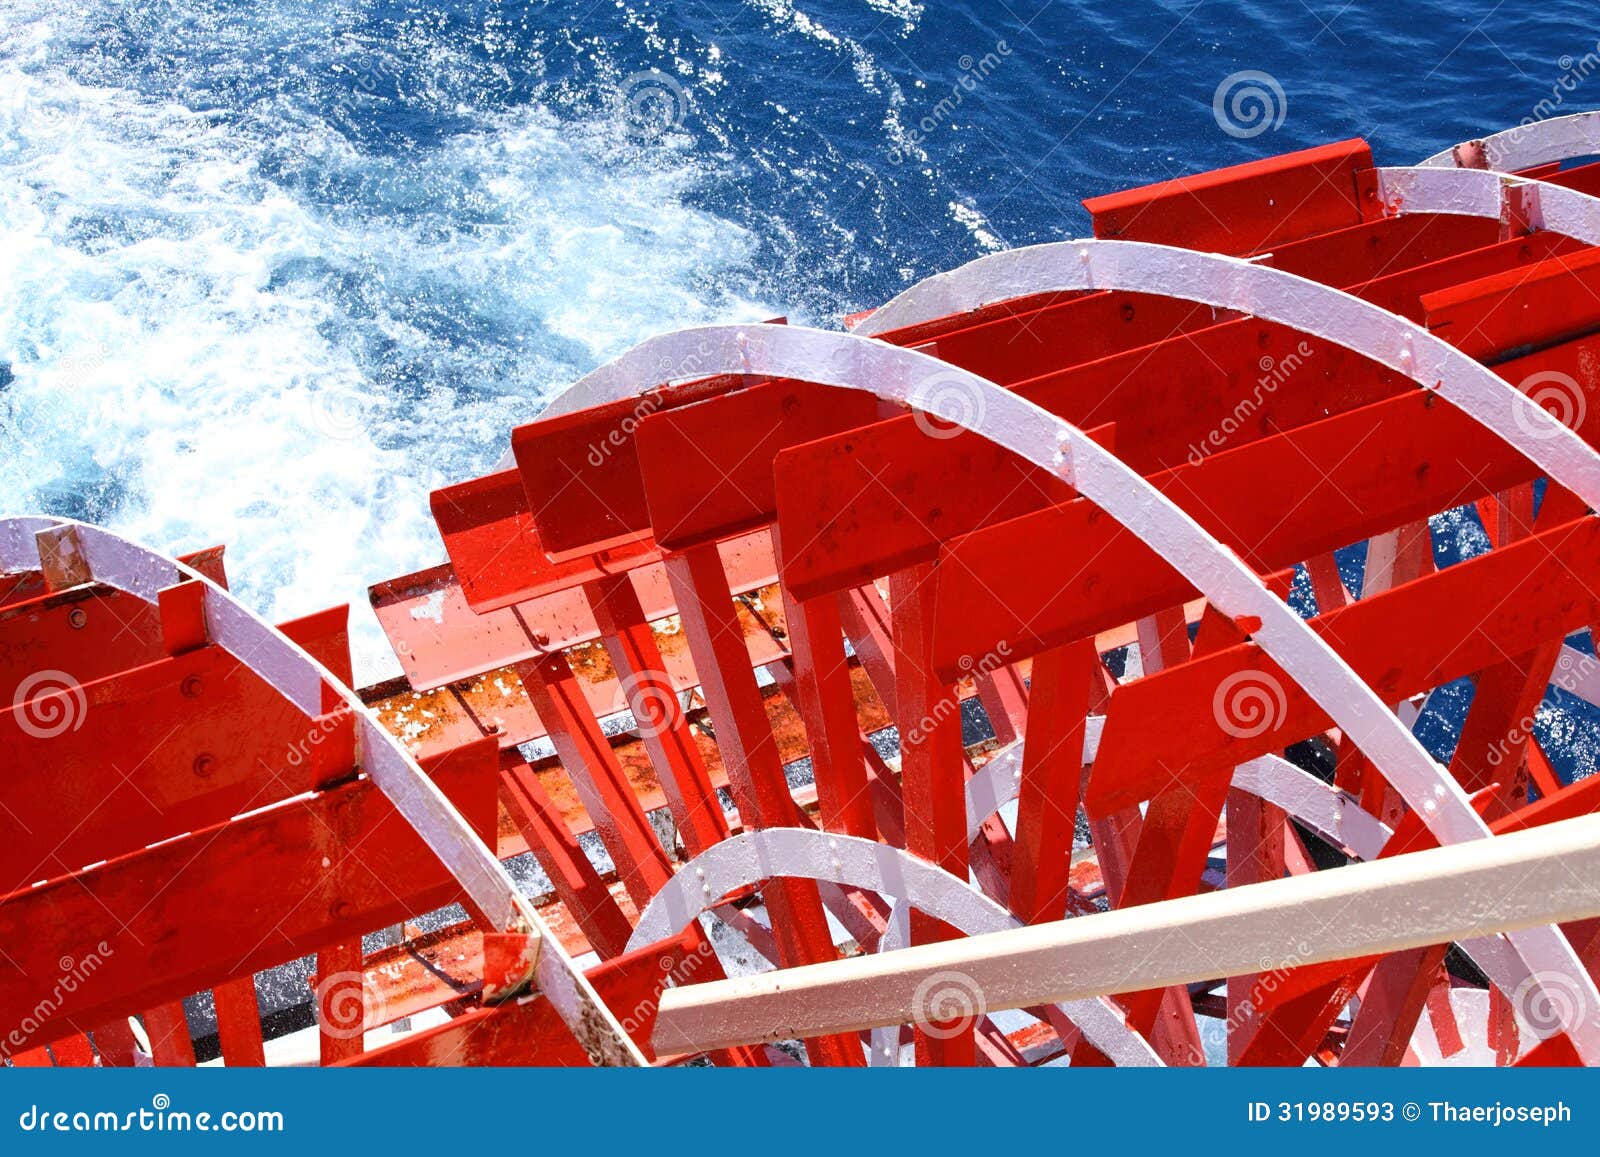 Paddle Wheel Cruise Boat Stock Photos - Image: 31989593